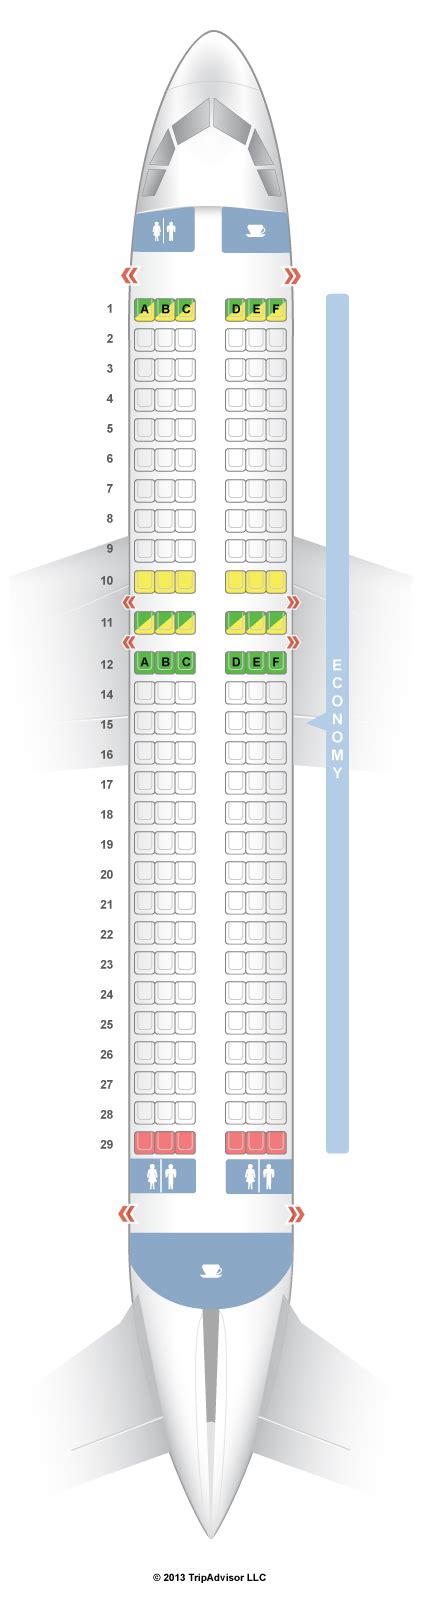 Seatguru Seat Map Sas Airbus A320 320